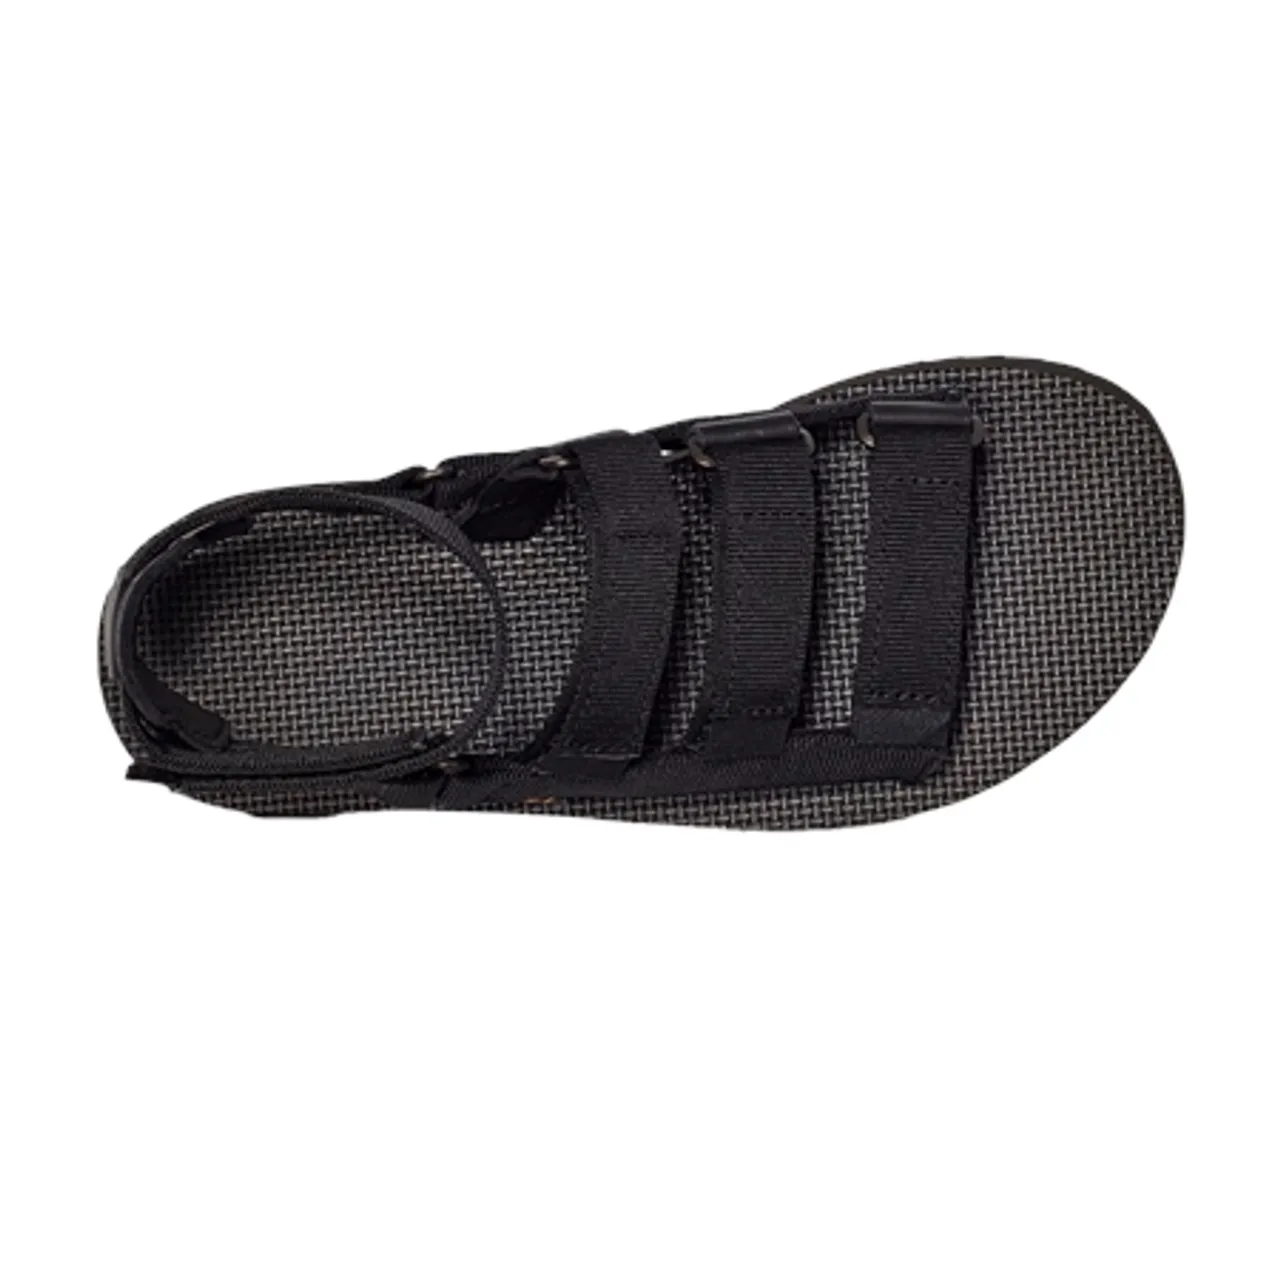 Teva Flatform Mevia Sandals - Black - UK 4 (EU 37)